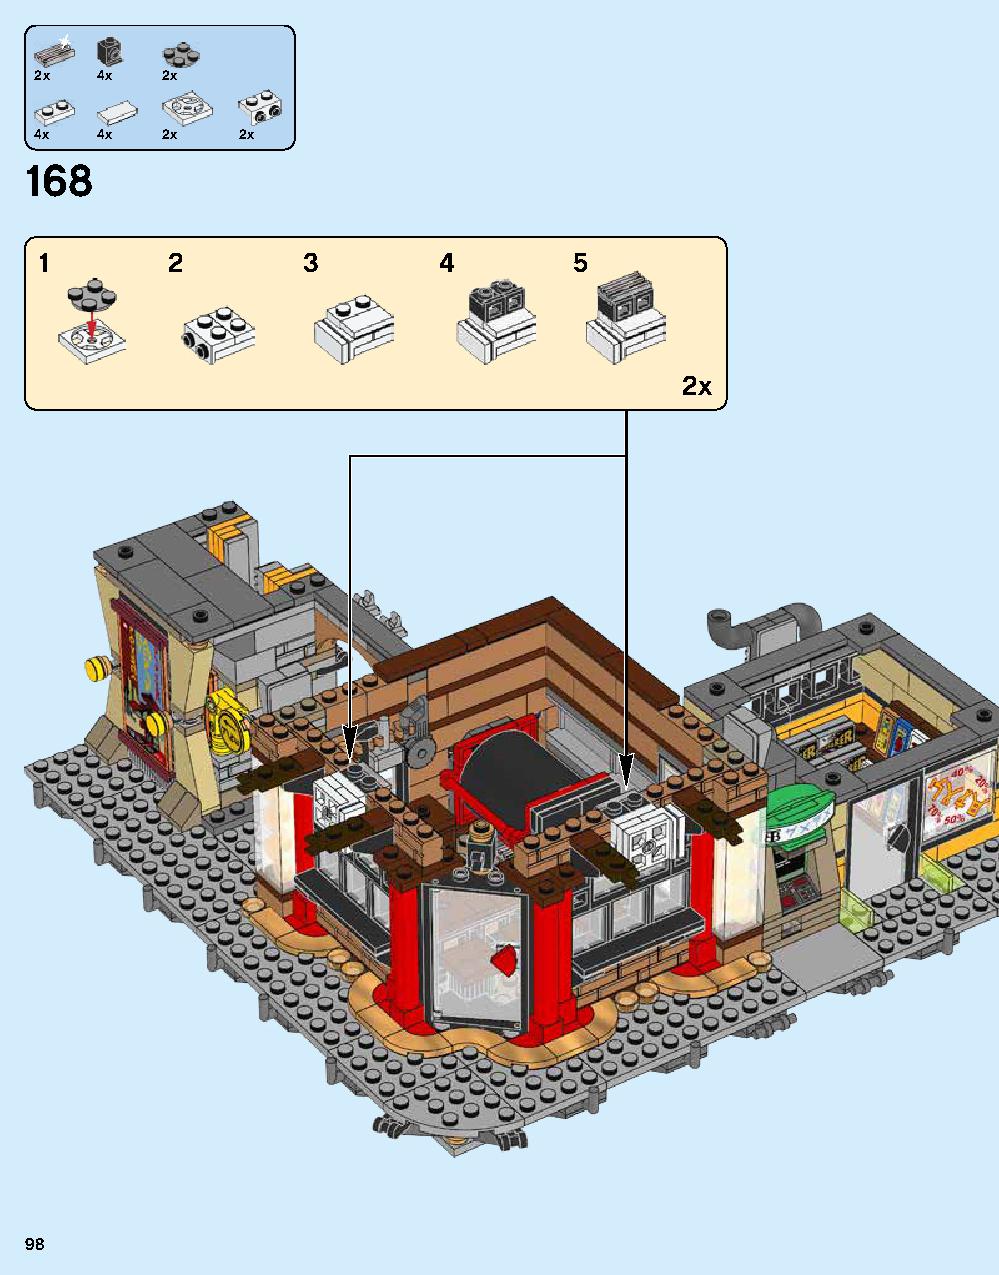 ニンジャゴー シティ 70620 レゴの商品情報 レゴの説明書・組立方法 98 page